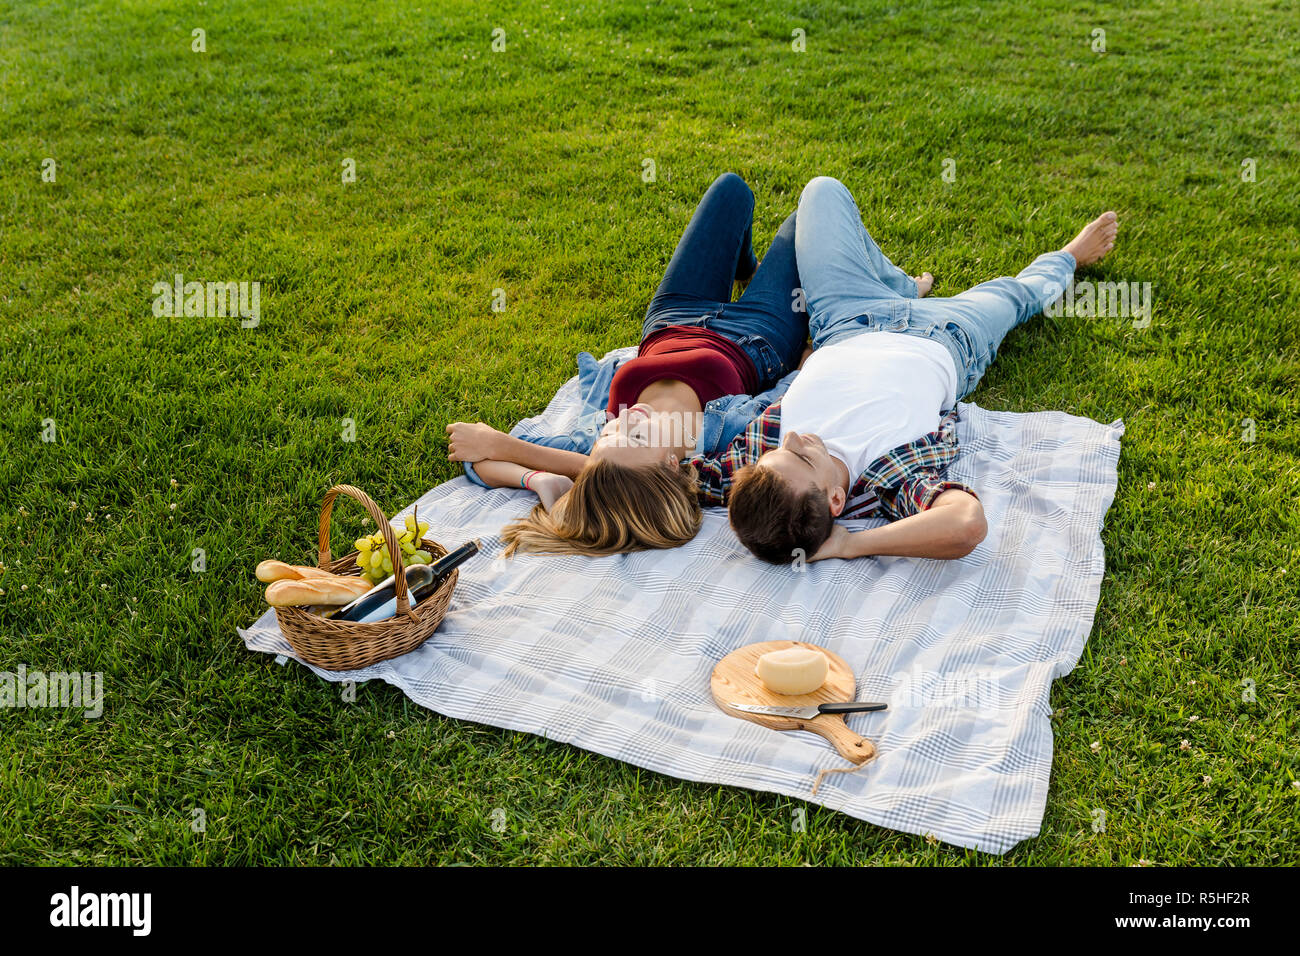 de picnic Fotografía de stock -